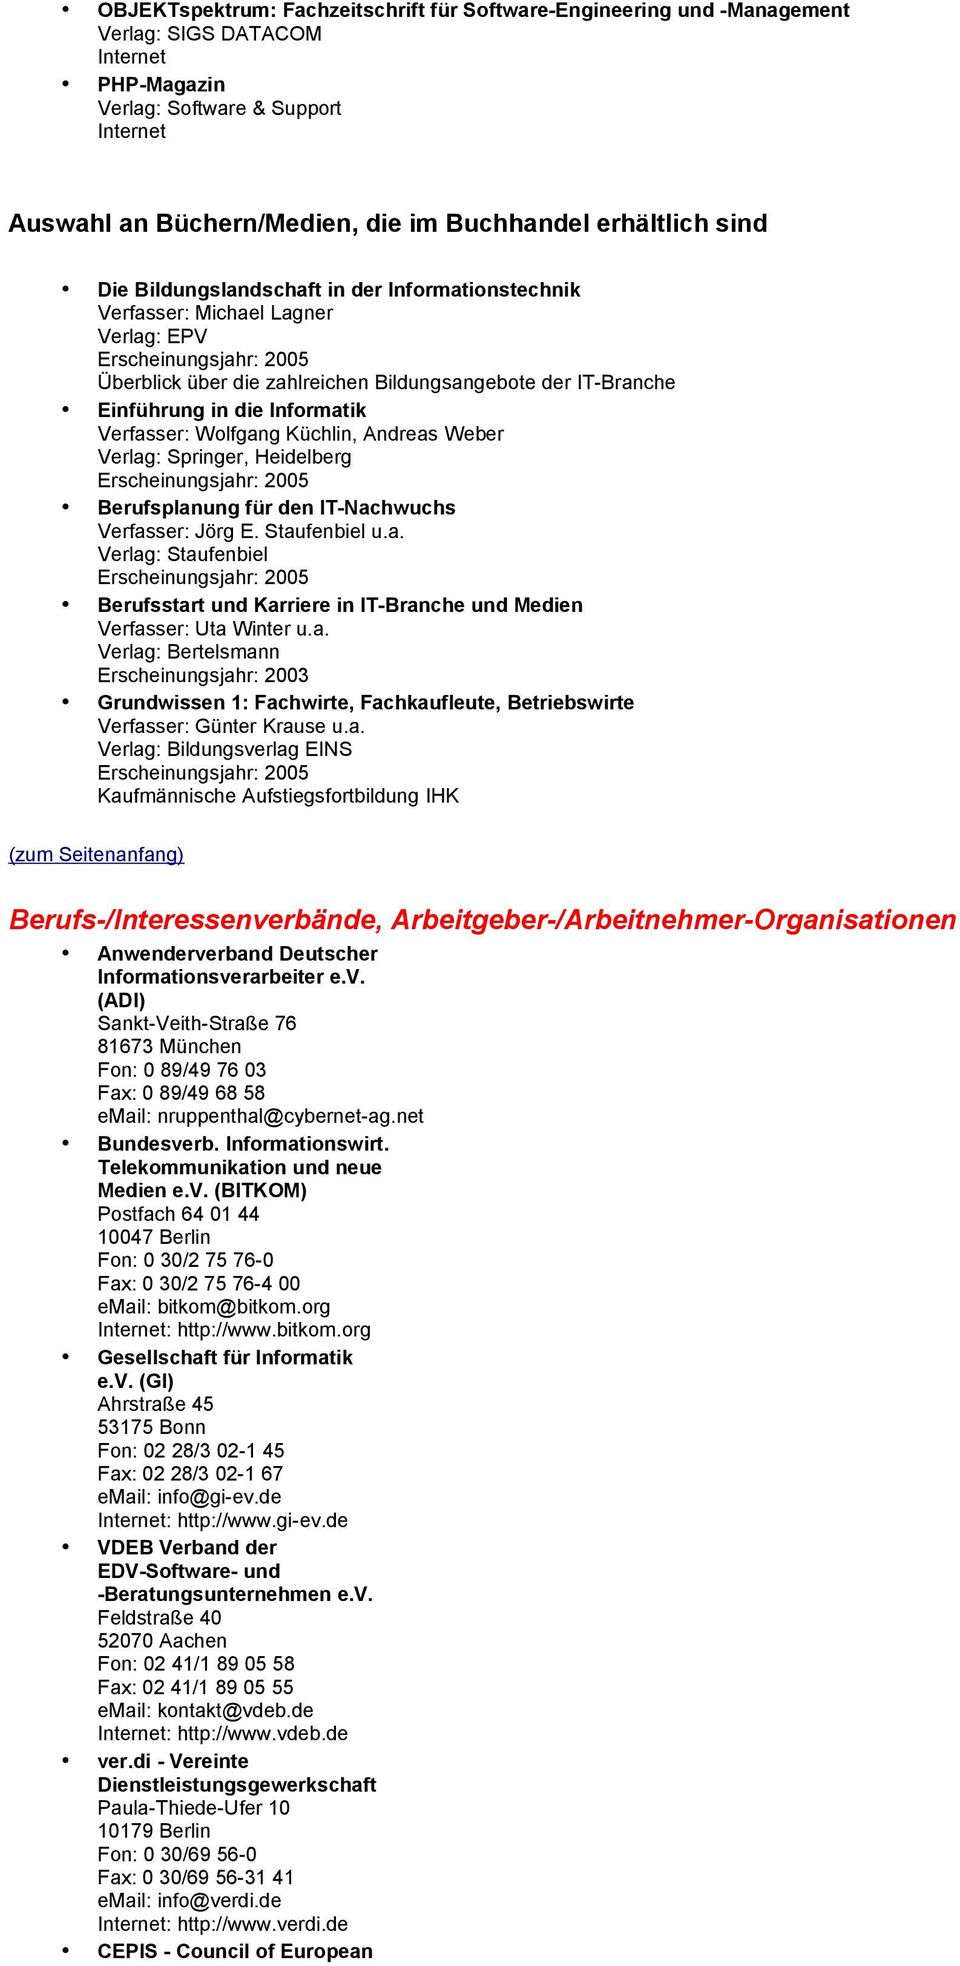 Küchlin, Andreas Weber Verlag: Springer, Heidelberg Berufsplanung für den IT-Nachwuchs Verfasser: Jörg E. Staufenbiel u.a. Verlag: Staufenbiel Berufsstart und Karriere in IT-Branche und Medien Verfasser: Uta Winter u.